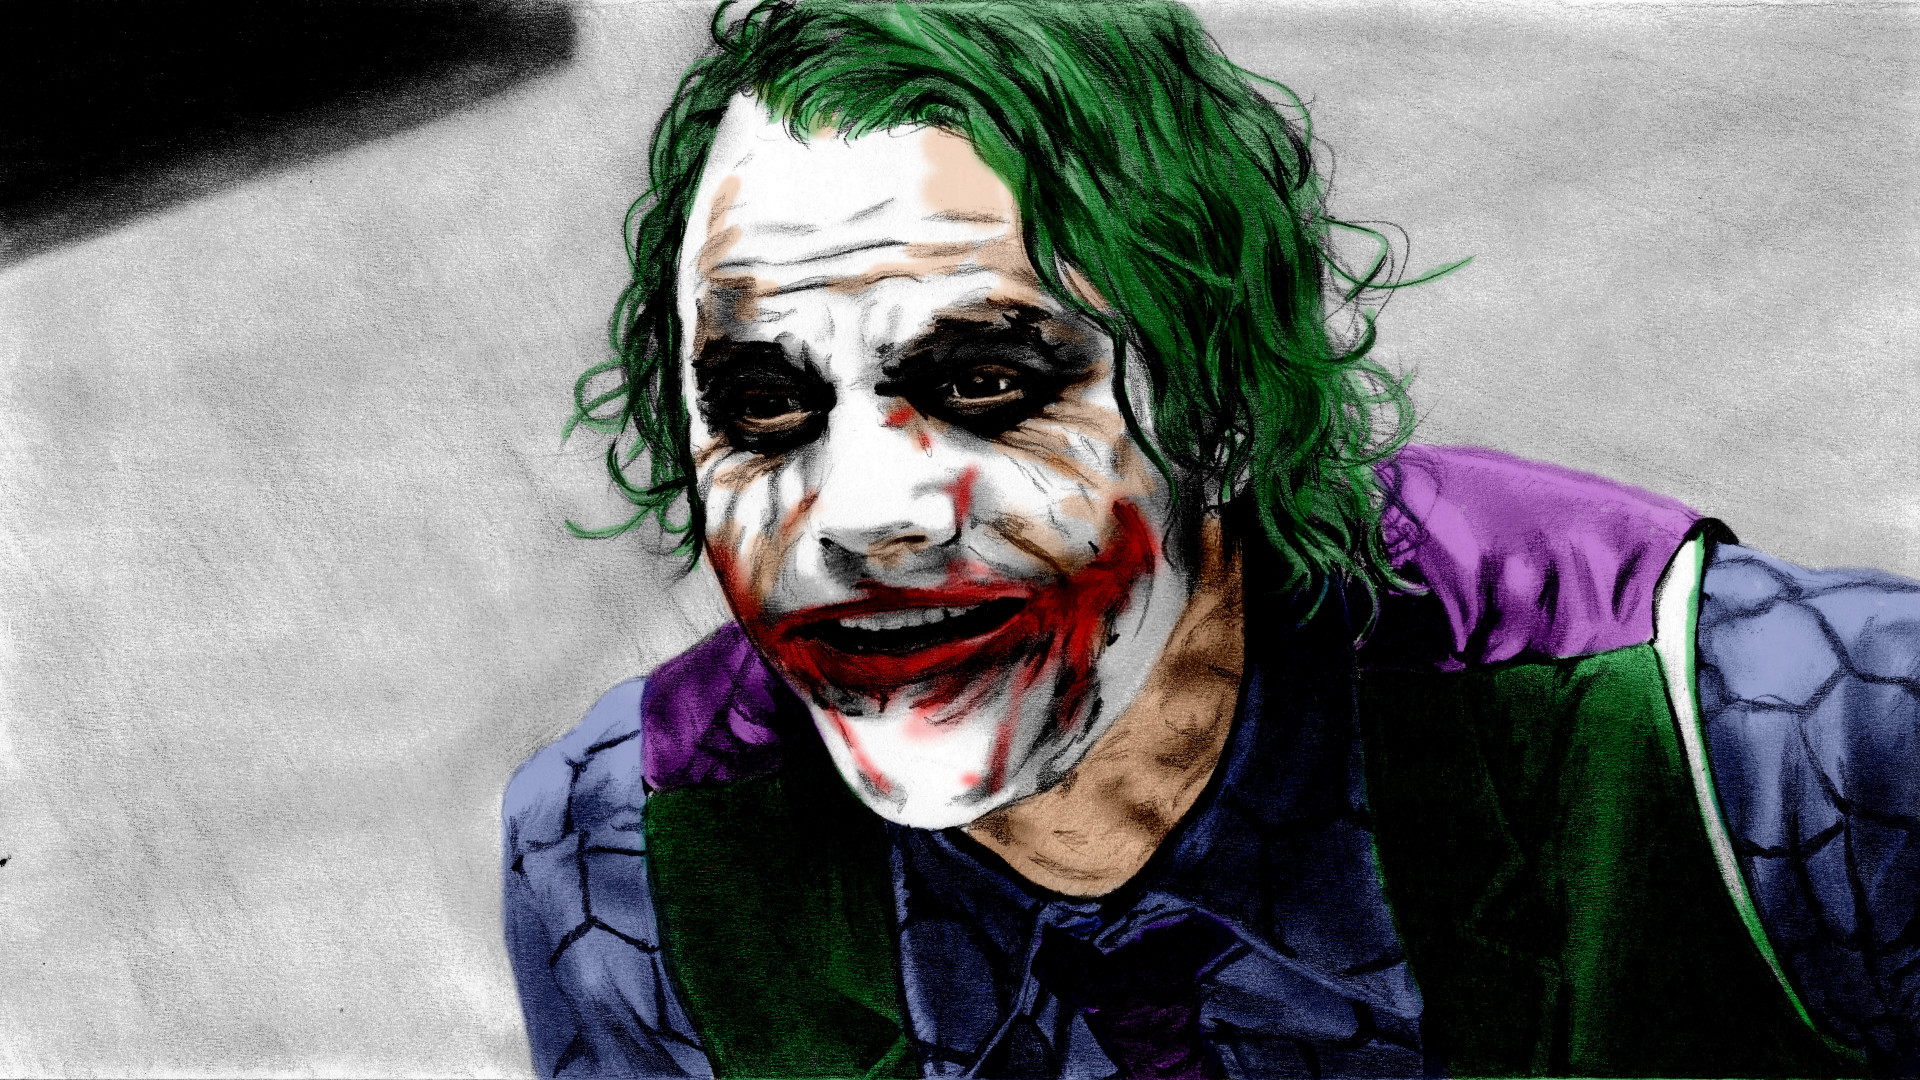 Full Hd Joker Pics Hd (#3020518) - HD ...